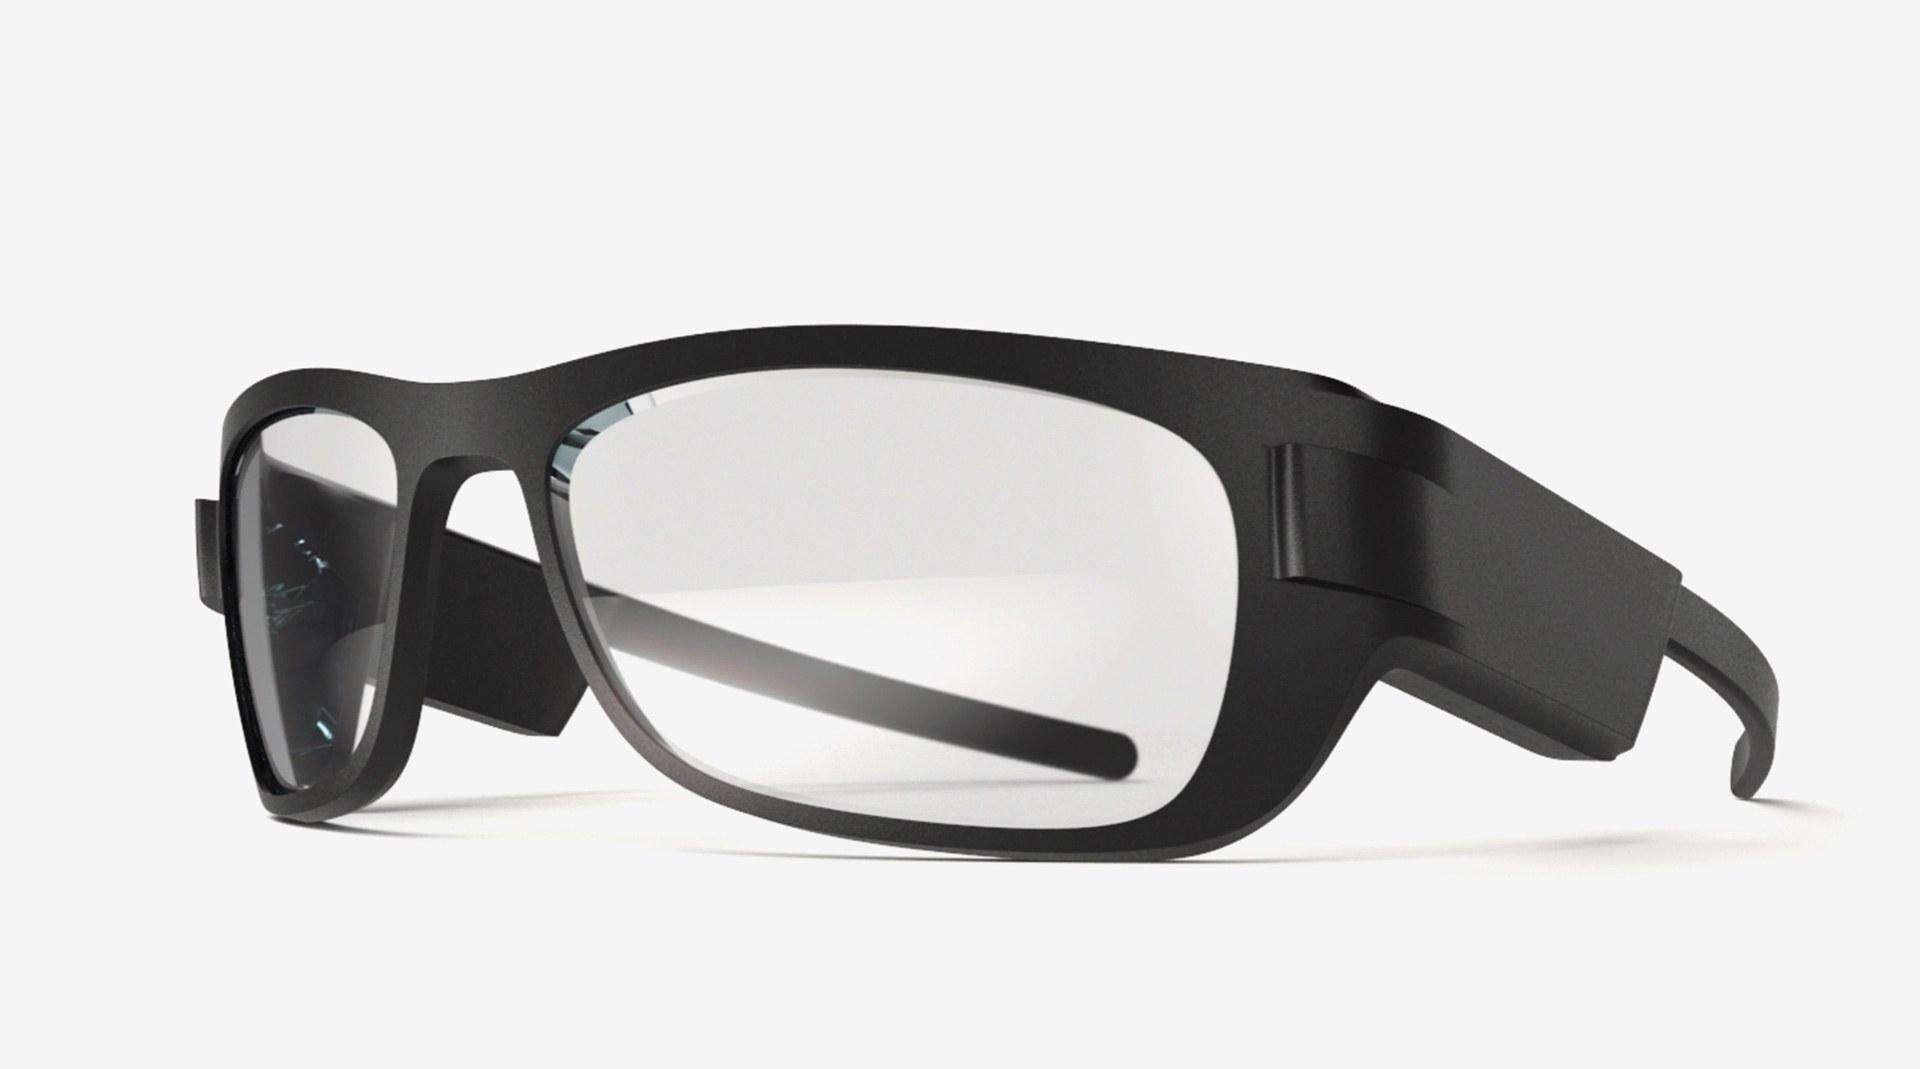 तो ये है स्मार्ट चश्मा जिसमें एक ही लैंस करेगा कई तरह के लैंसों का काम